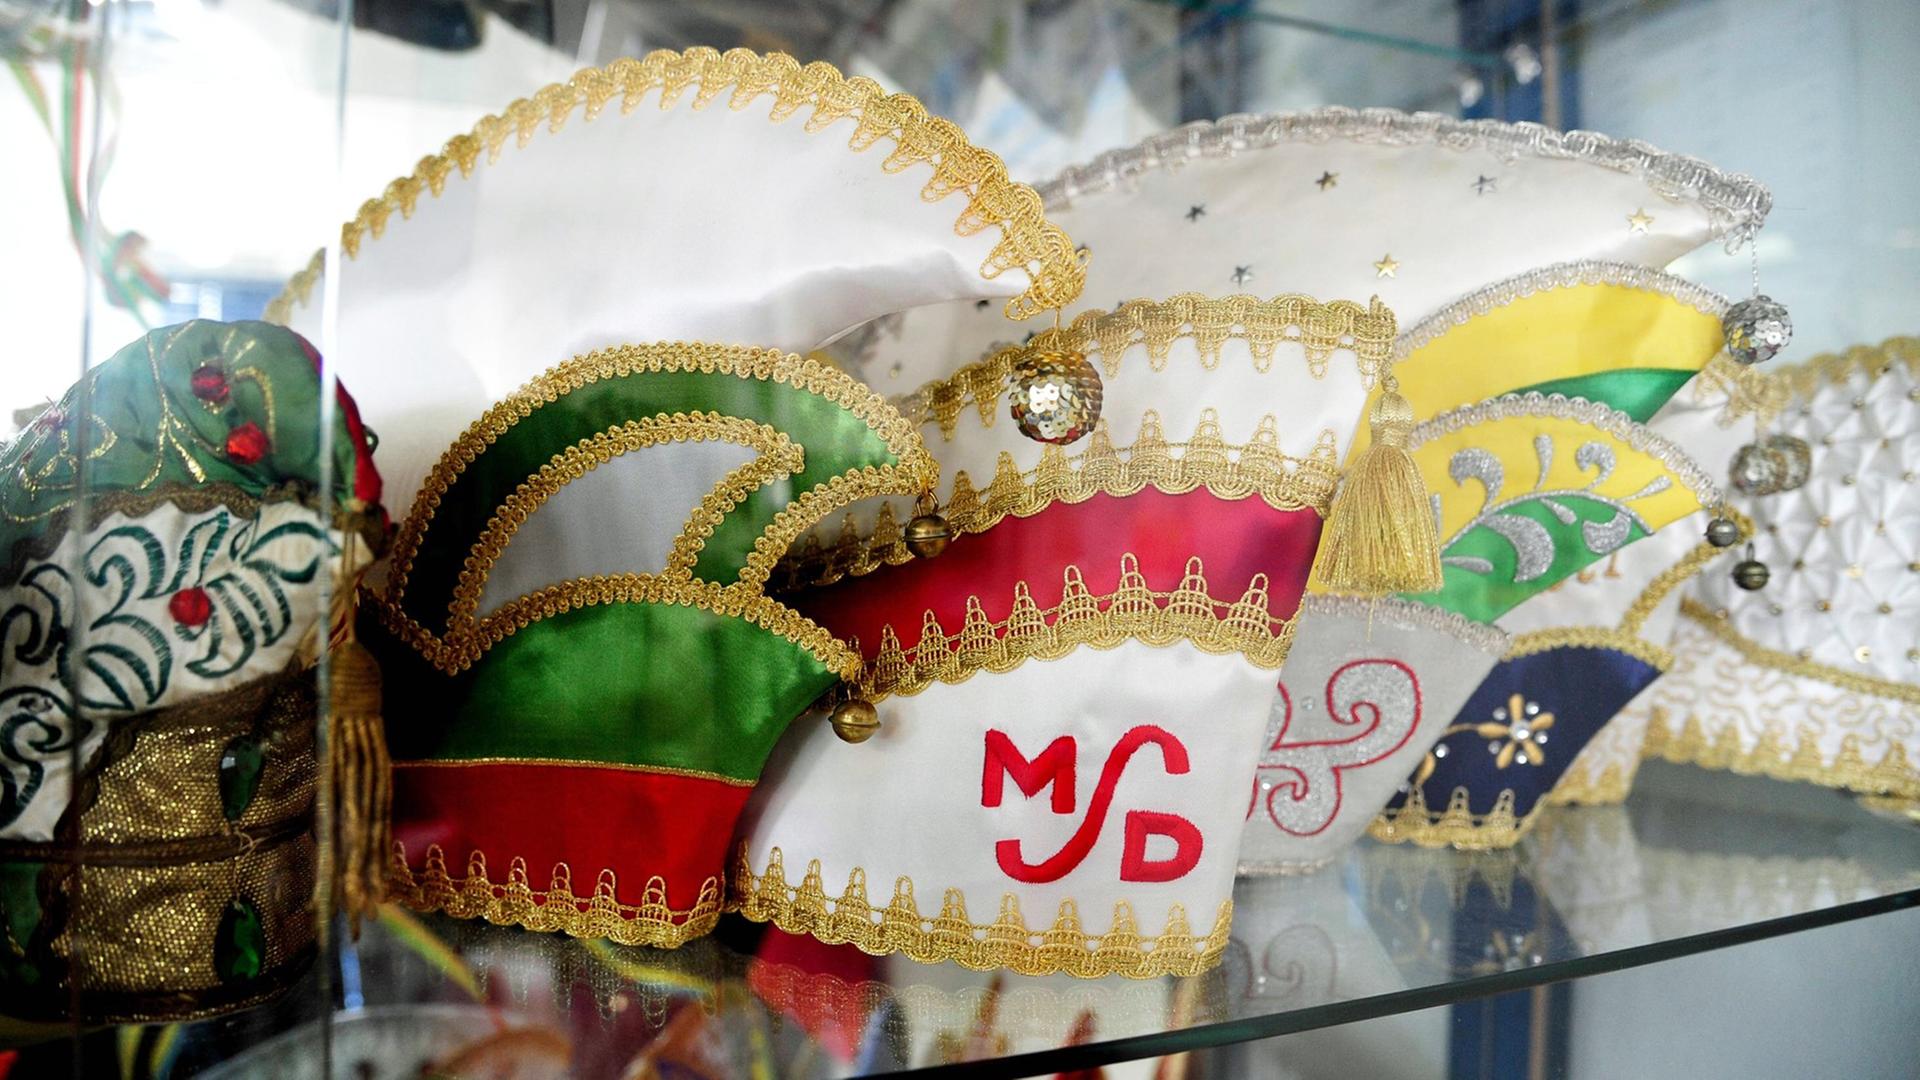 Mützen für Karneval stehen in einer Virtrine der Stickerei und Fahnenfabrik H. u M. Schwarz GmbH in Heusweiler.